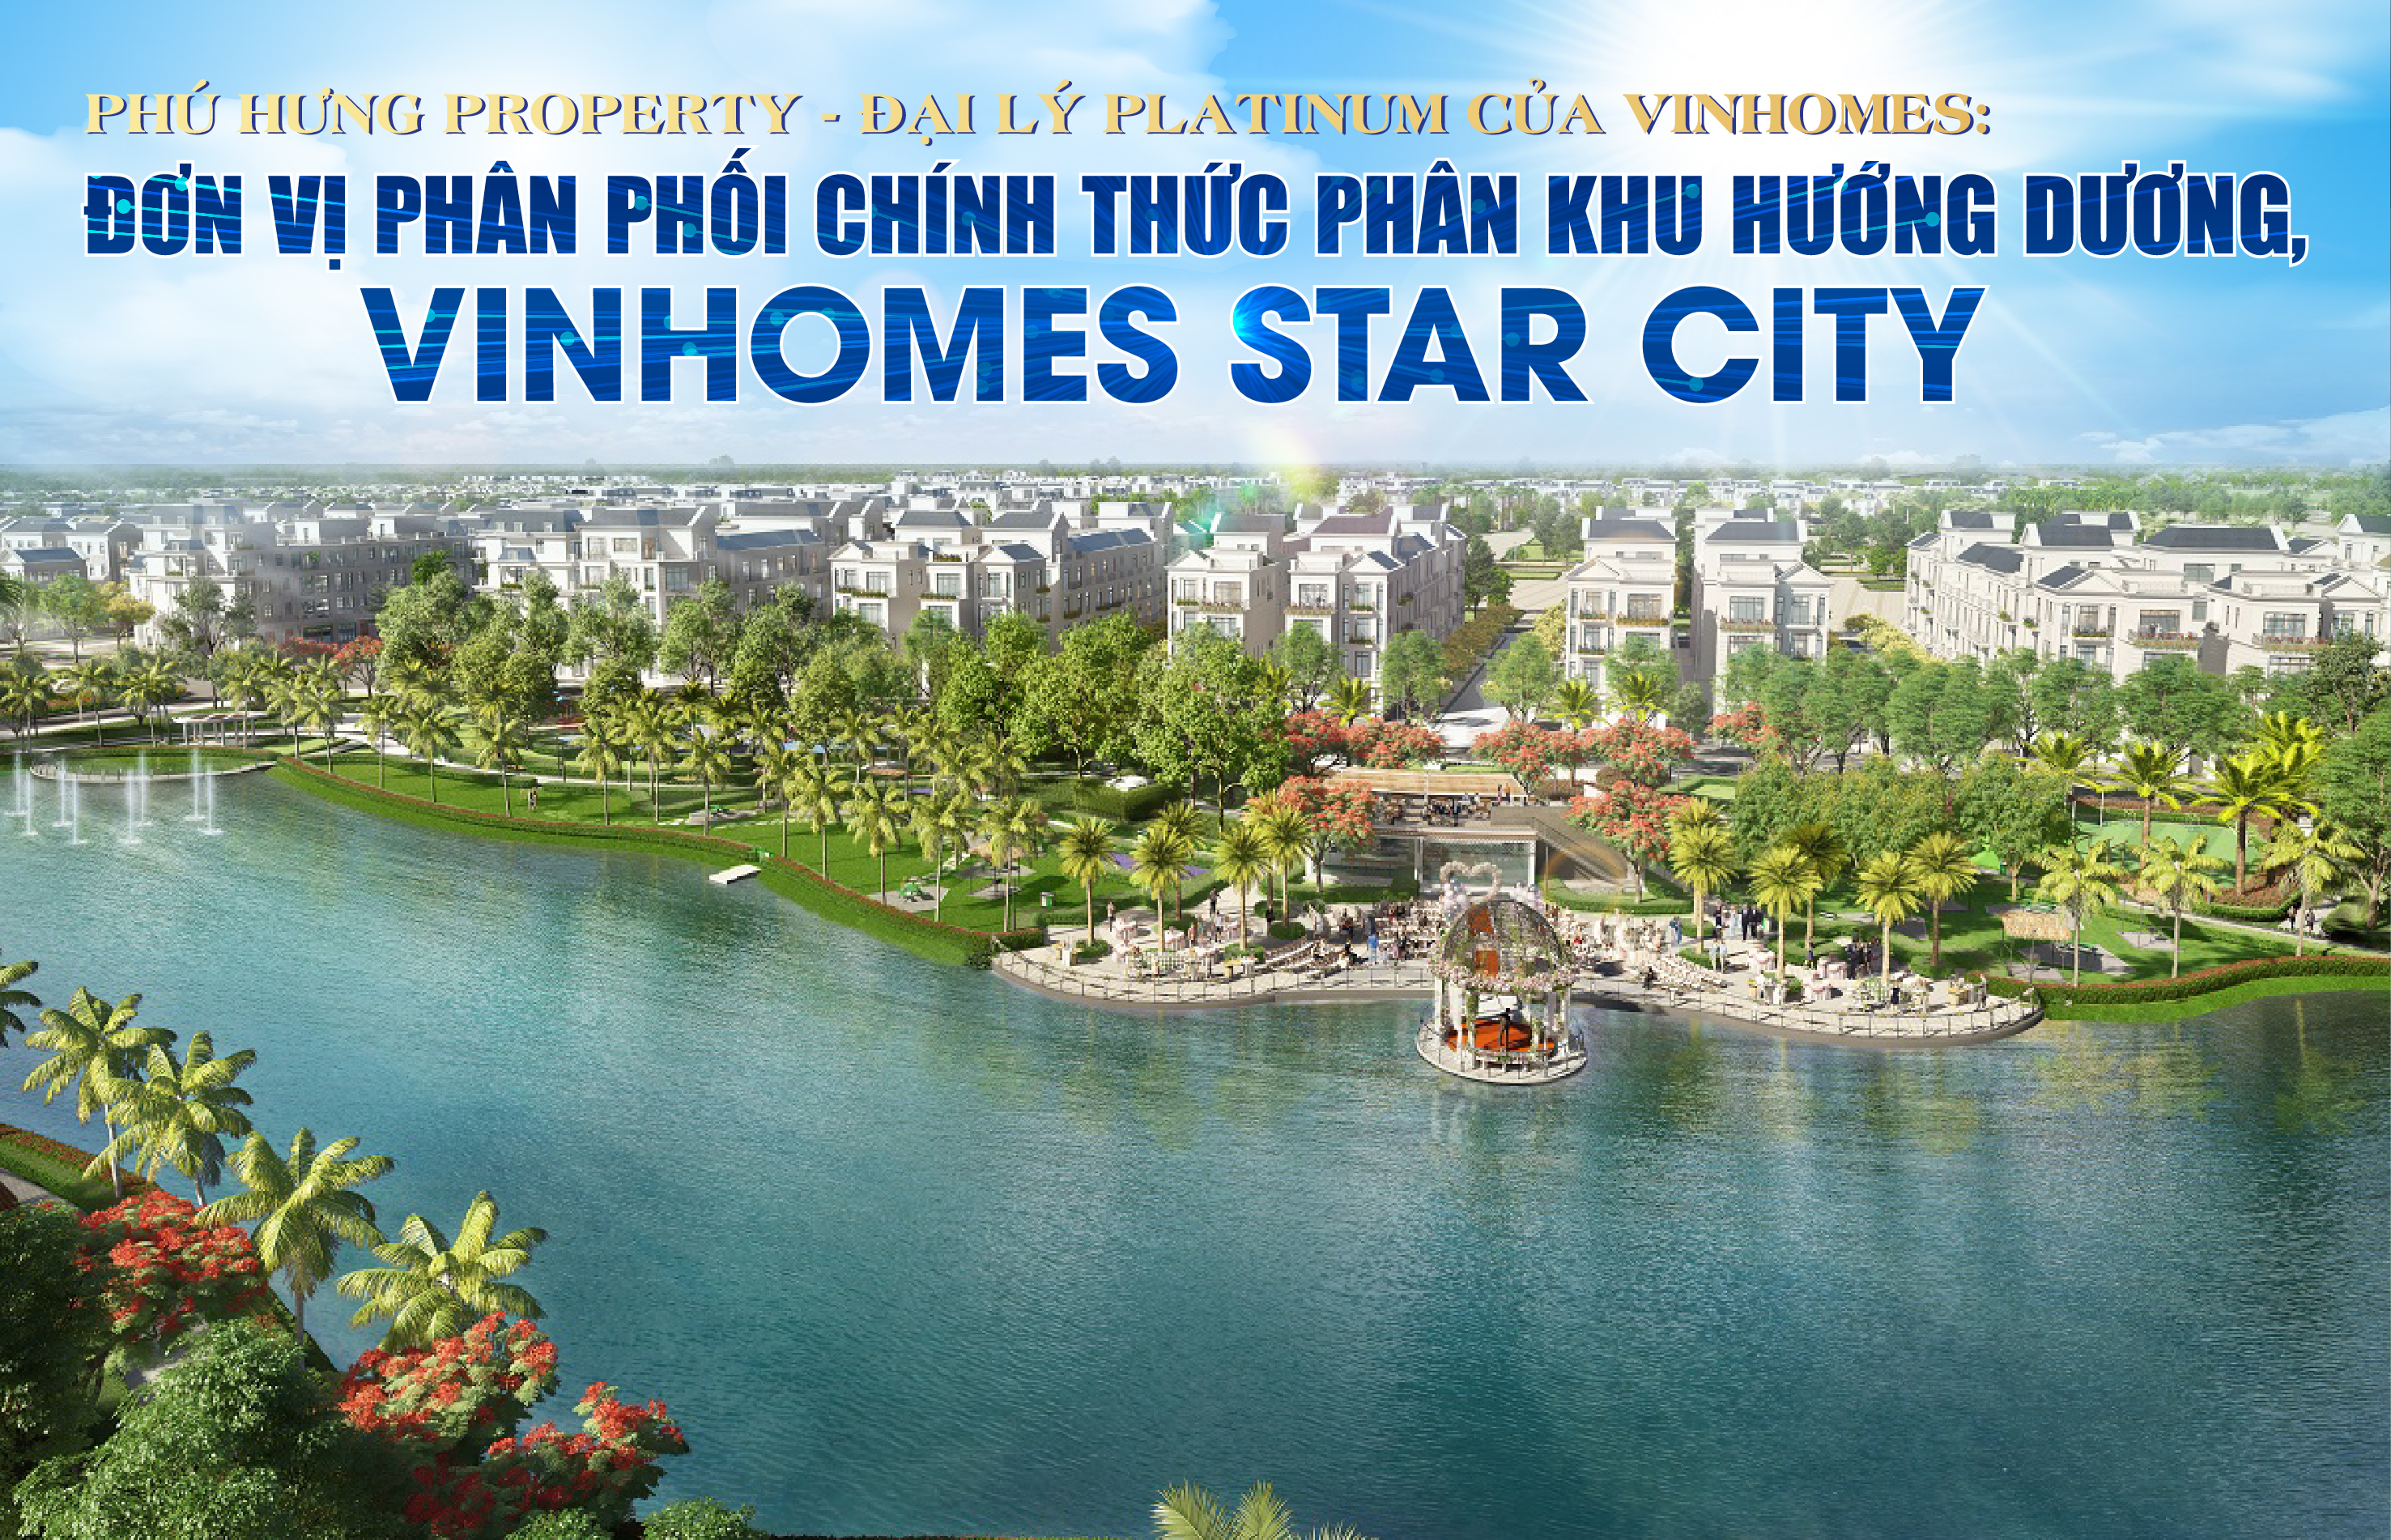 Phú Hưng Property - Đại lý Platinum của Vinhomes: Đơn vị phân phối chính thức phân khu Hướng Dương, Vinhomes Star City